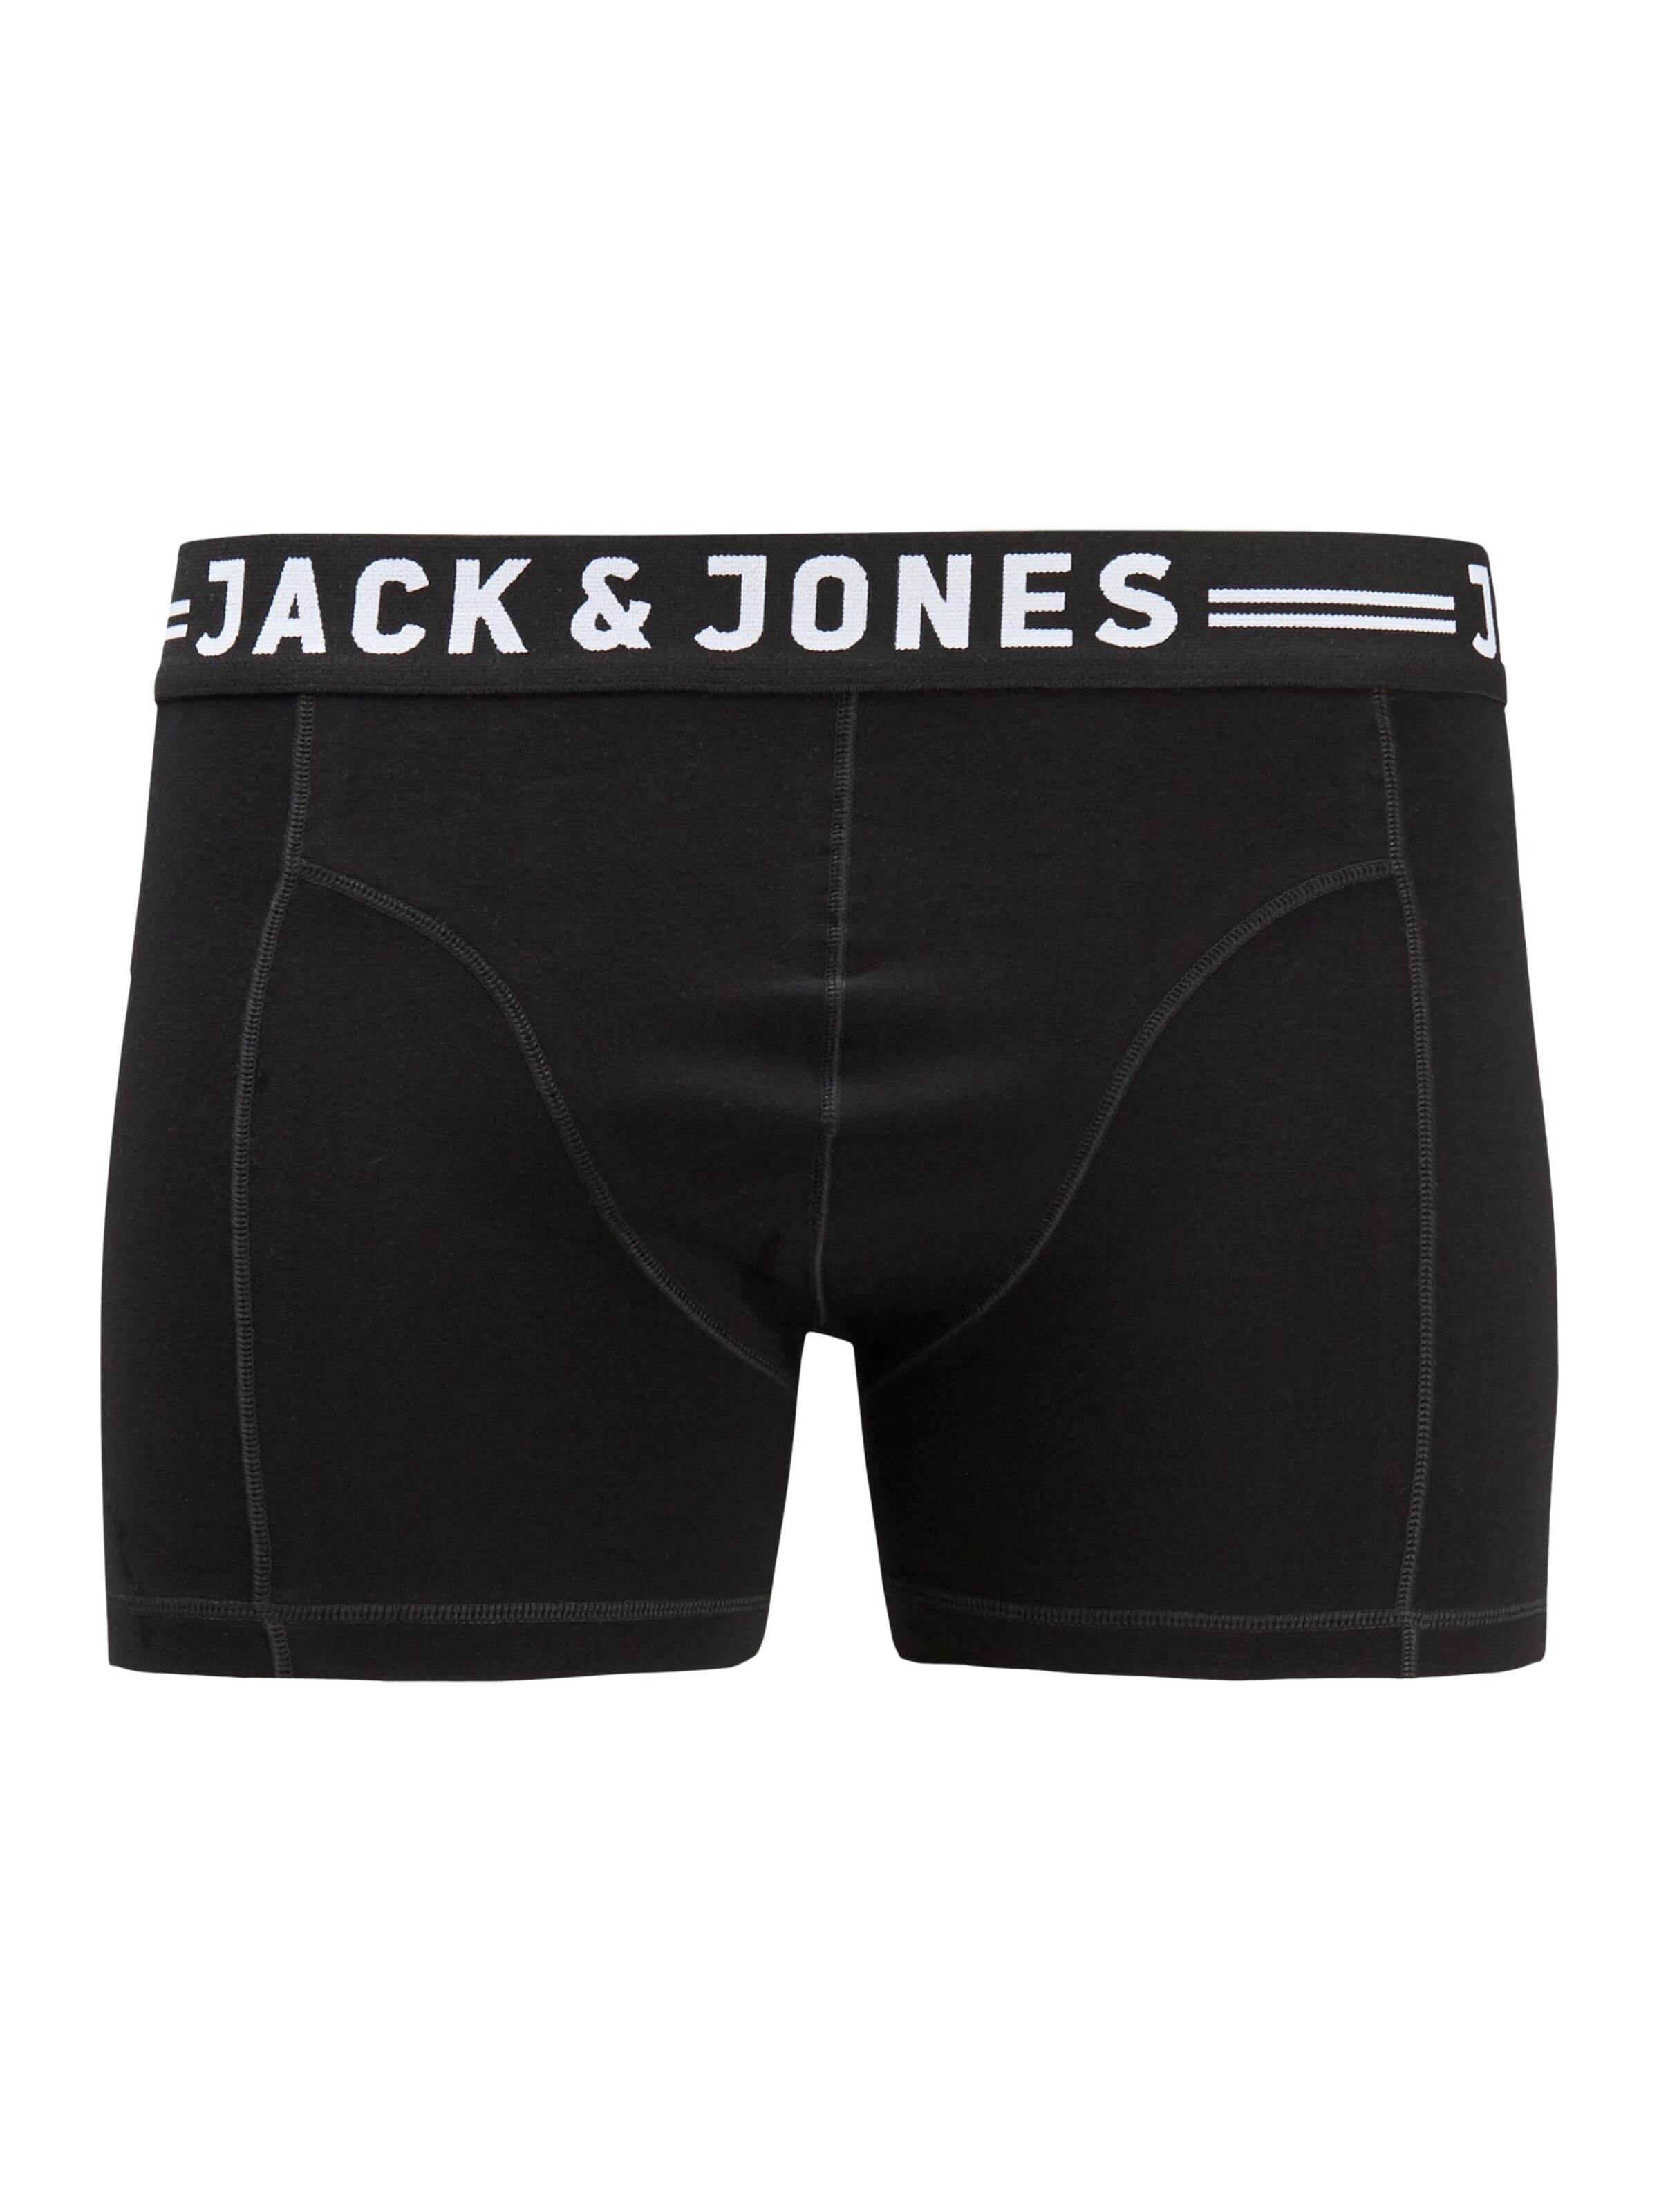 Jack & Jones Boxers 'sense' XXL Noir